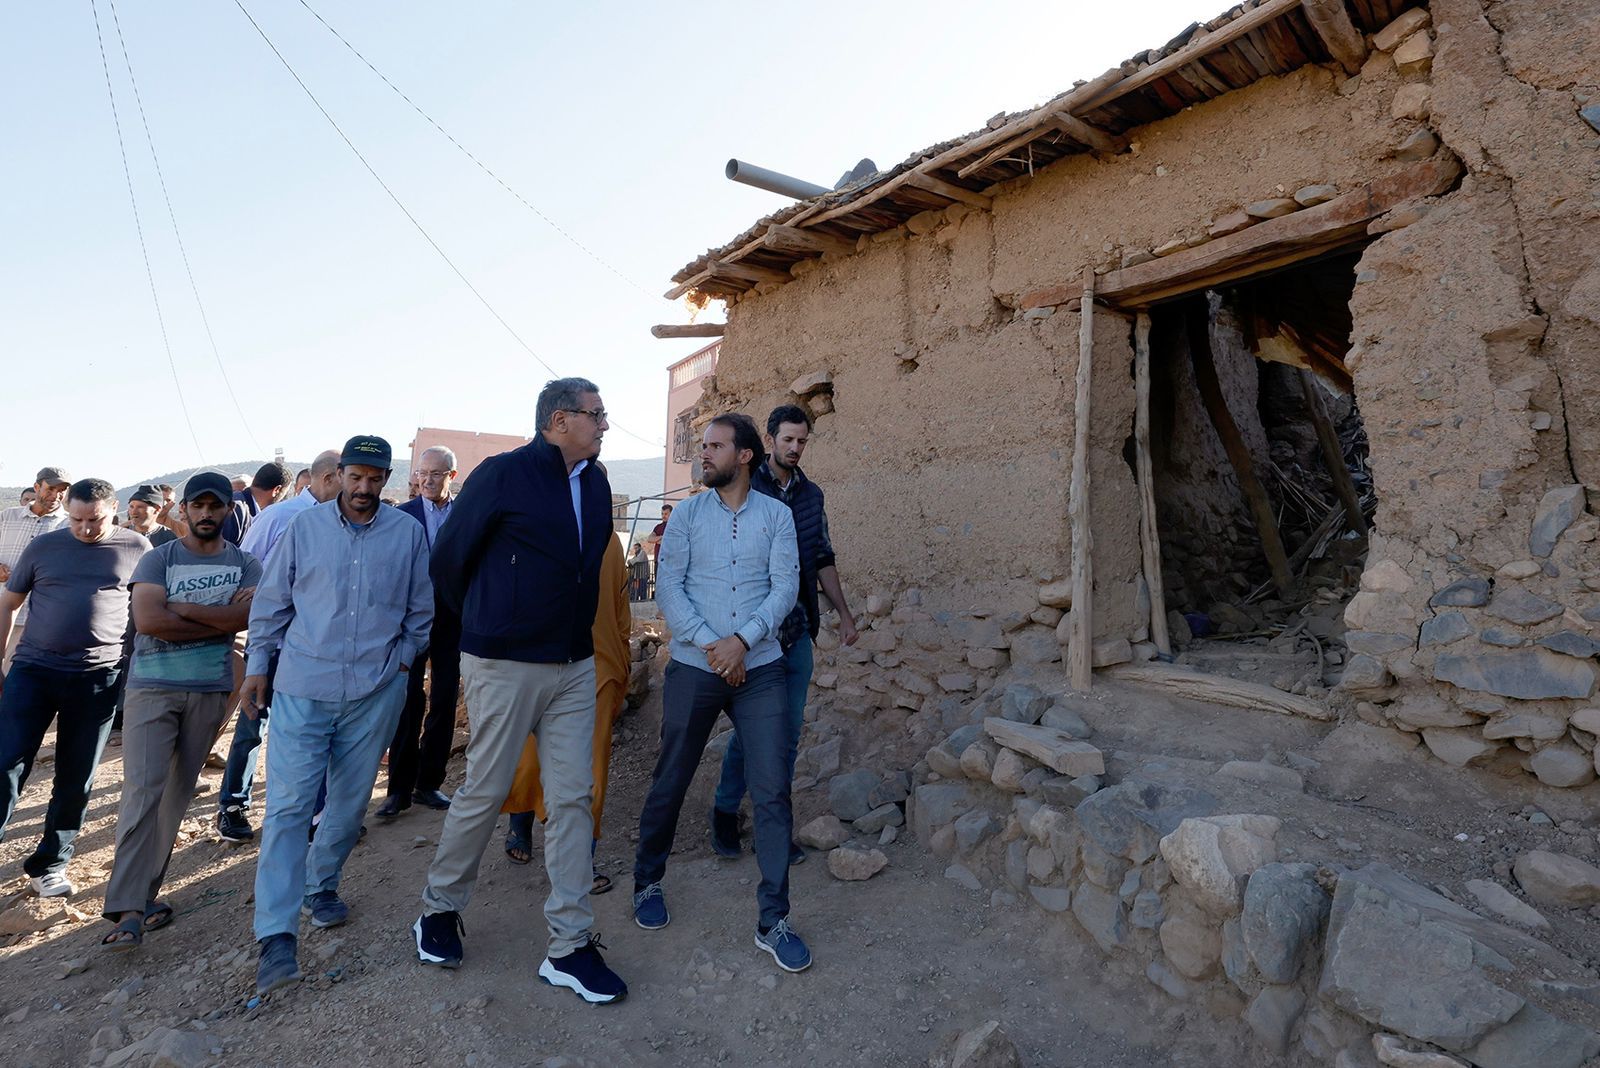 المغرب يعلن عن برامج تنموية جديدة في مناطق الزلزال وسط تواصل إغاثة المتضررين